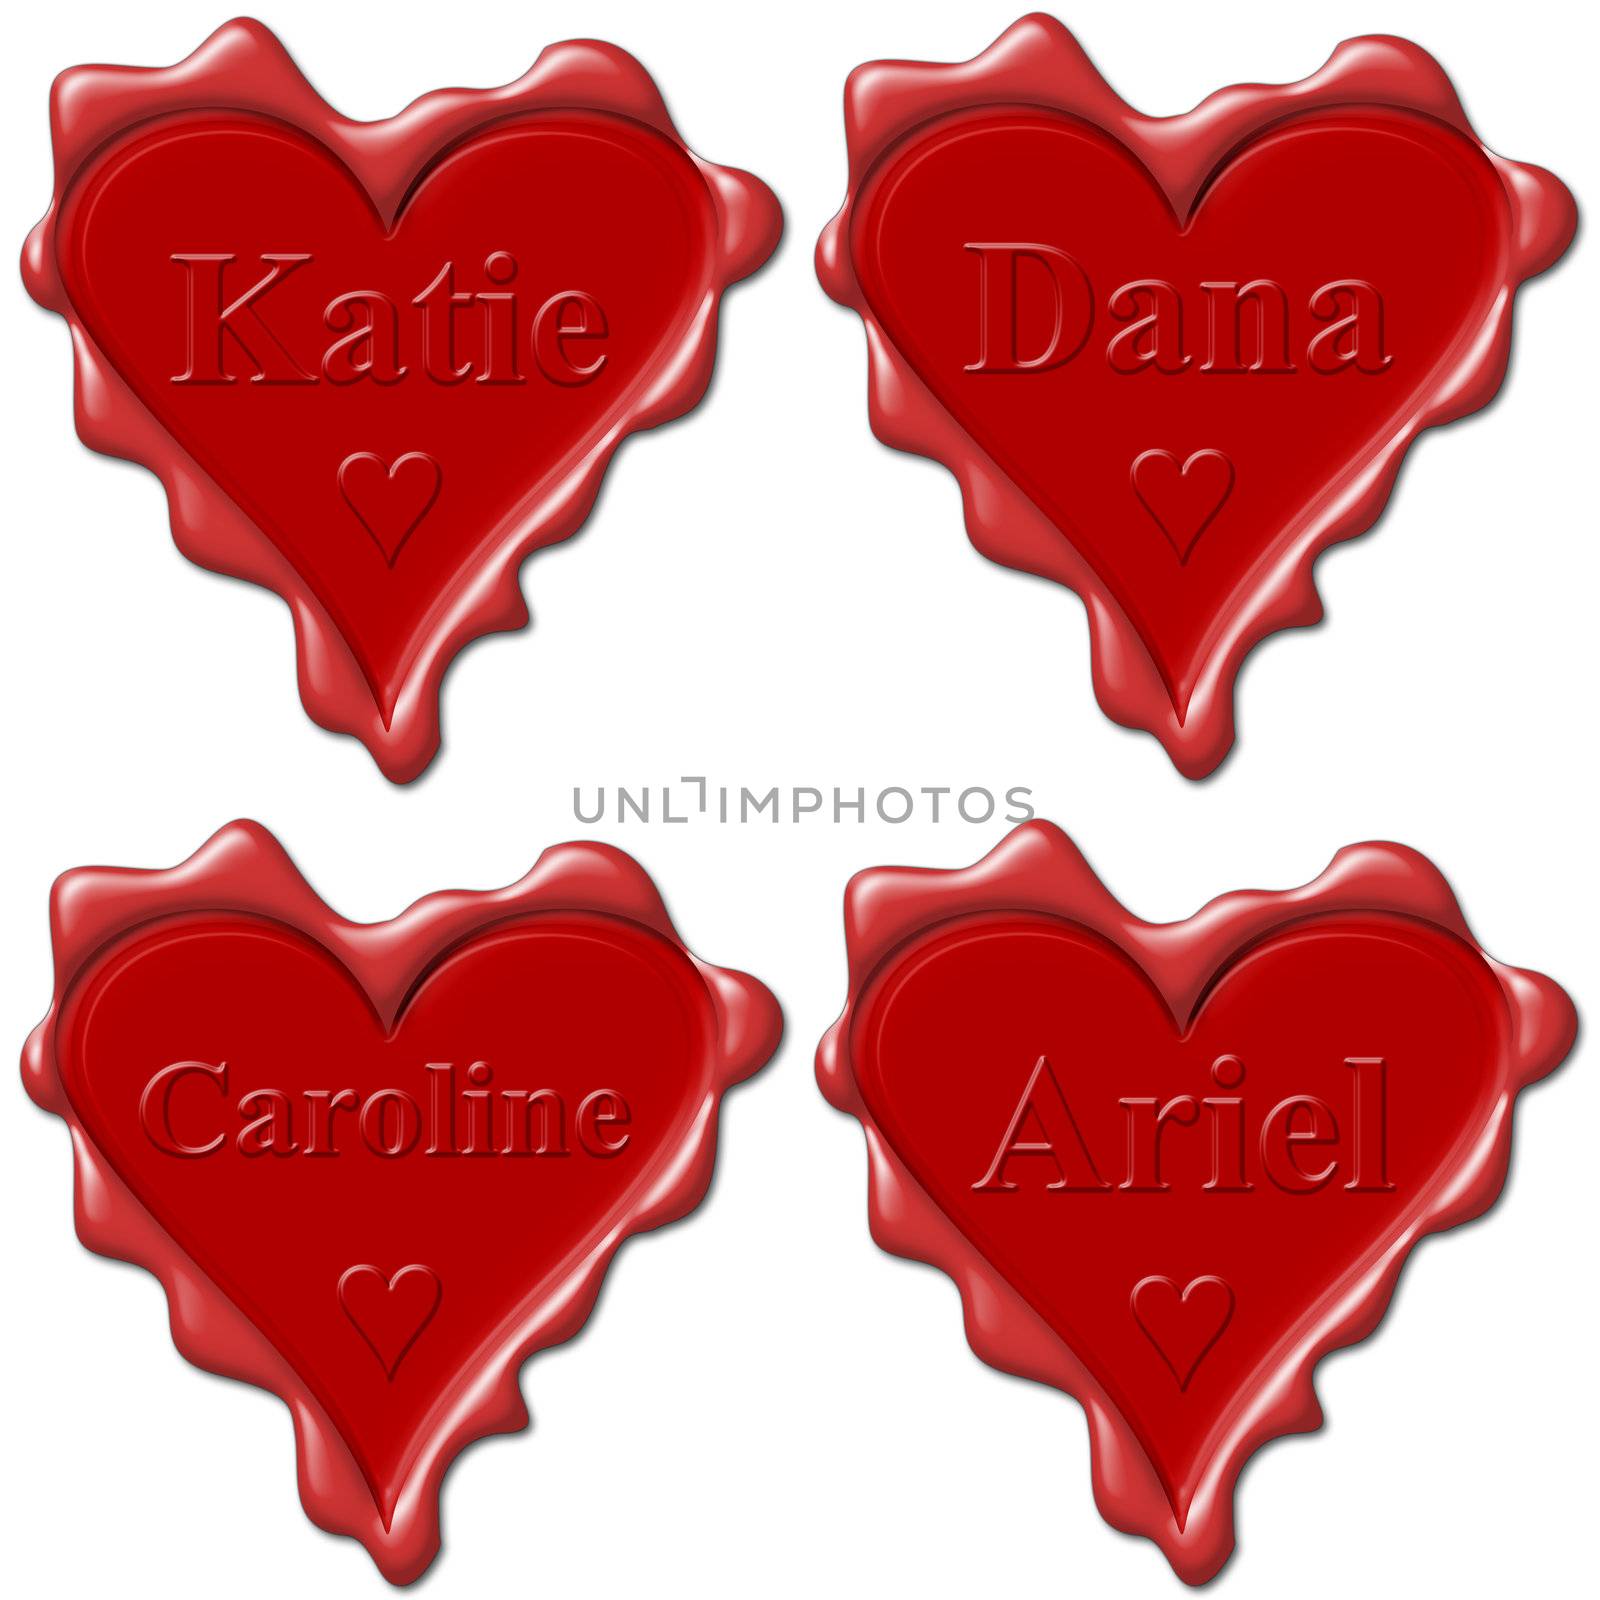 Valentine love hearts with names: Katie, Dana, Caroline, Ariel by mozzyb